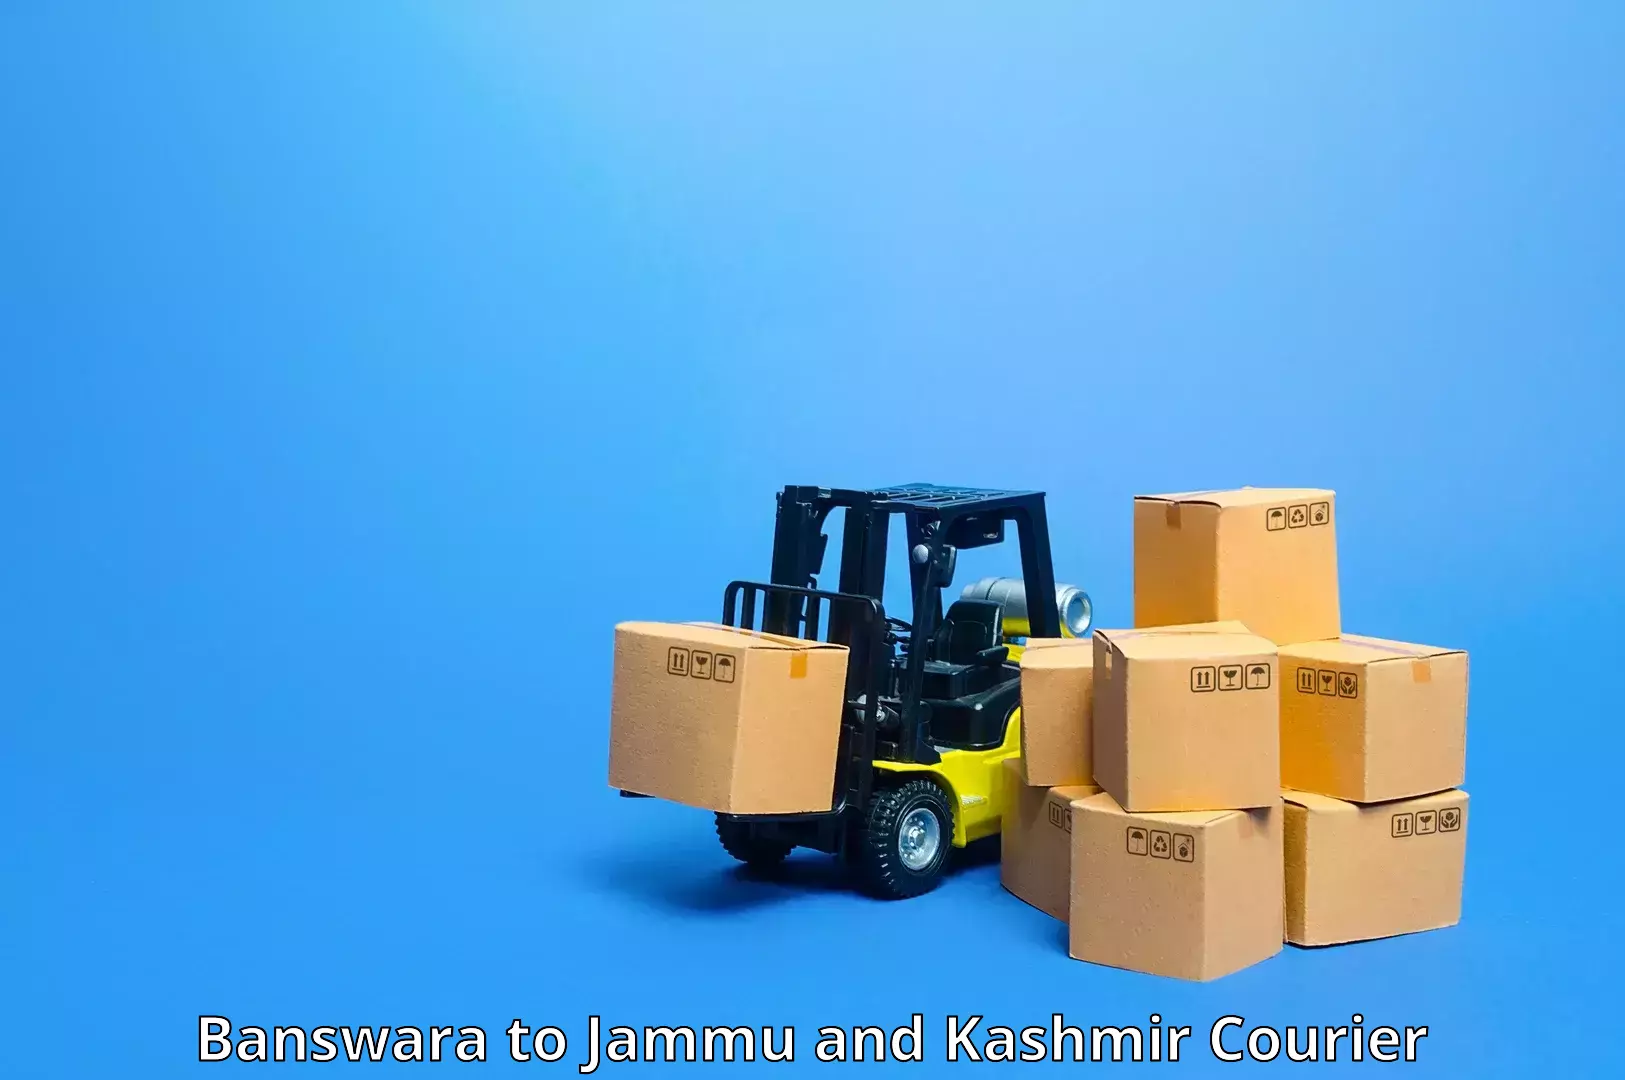 Express delivery capabilities Banswara to NIT Srinagar